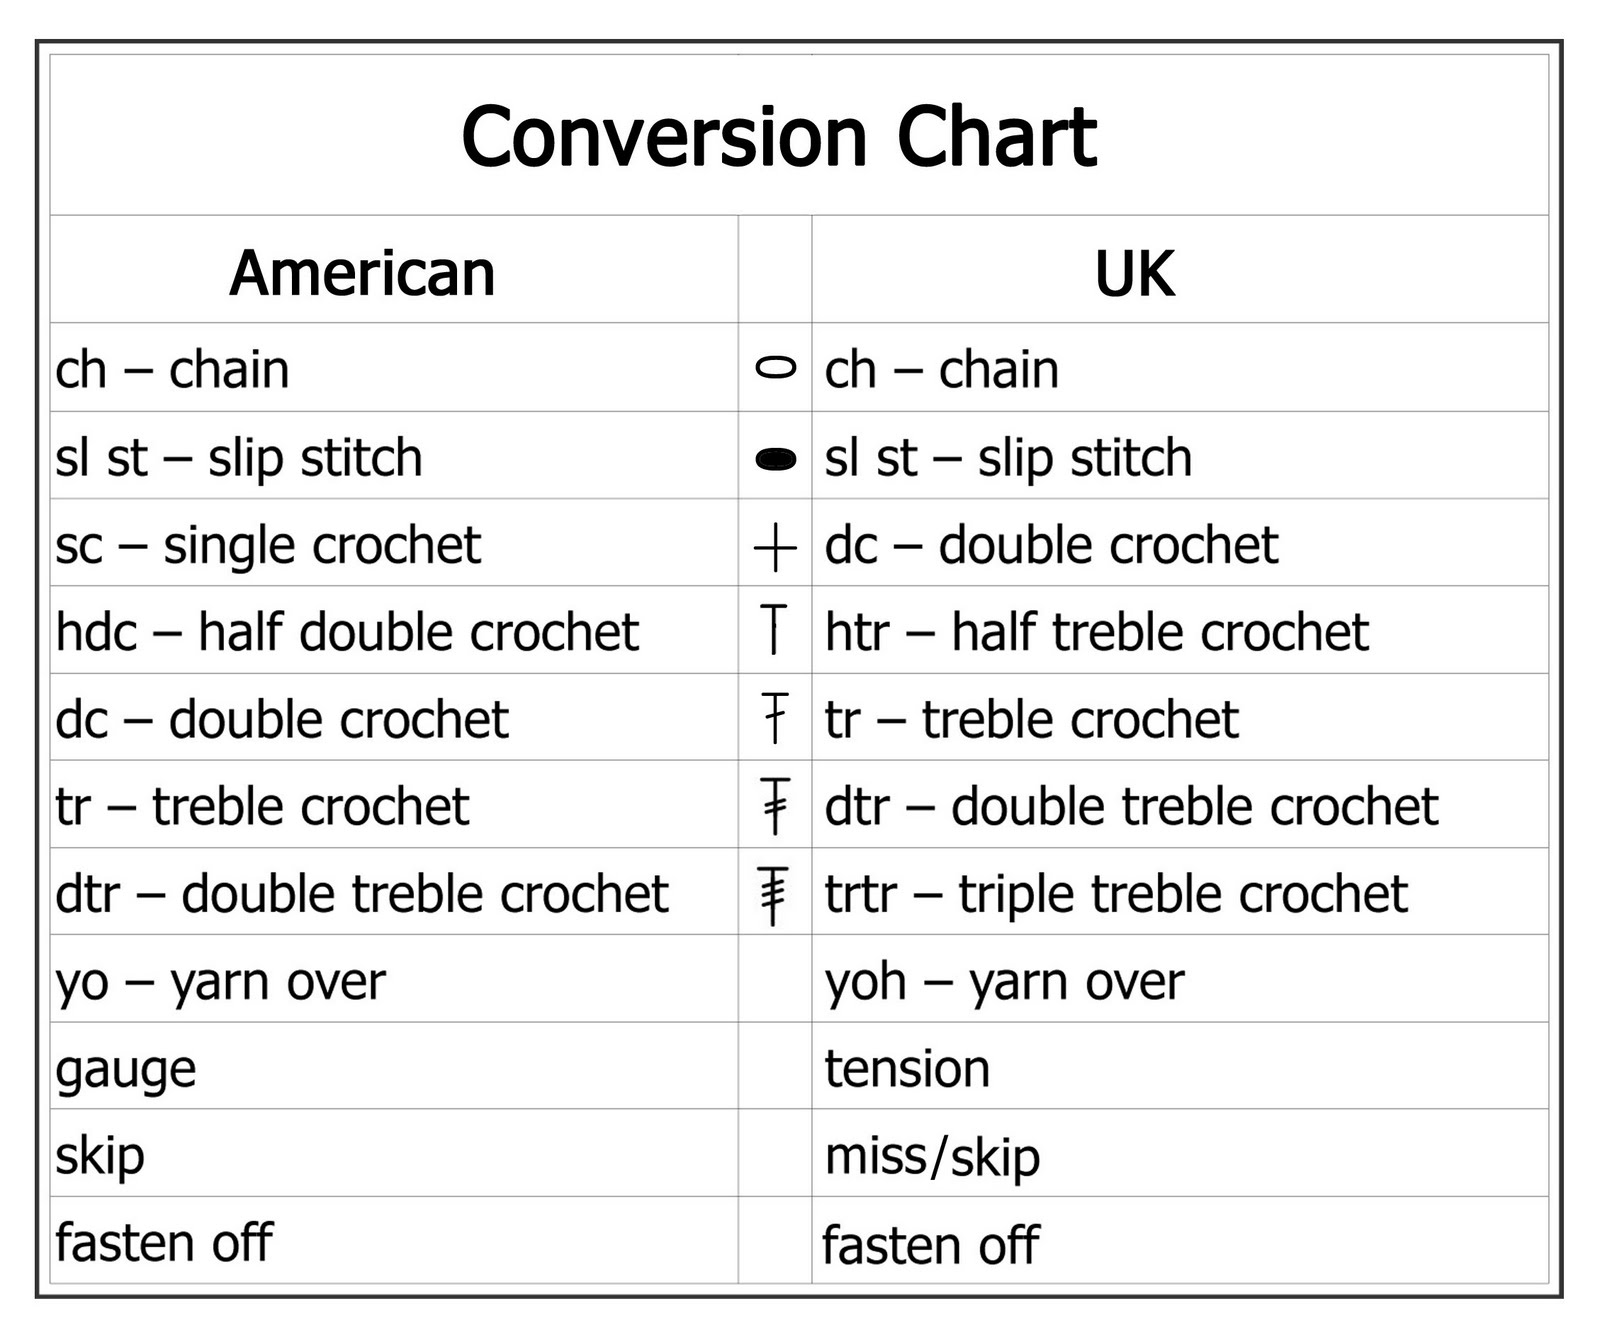 Convert Crochet Pattern To Chart